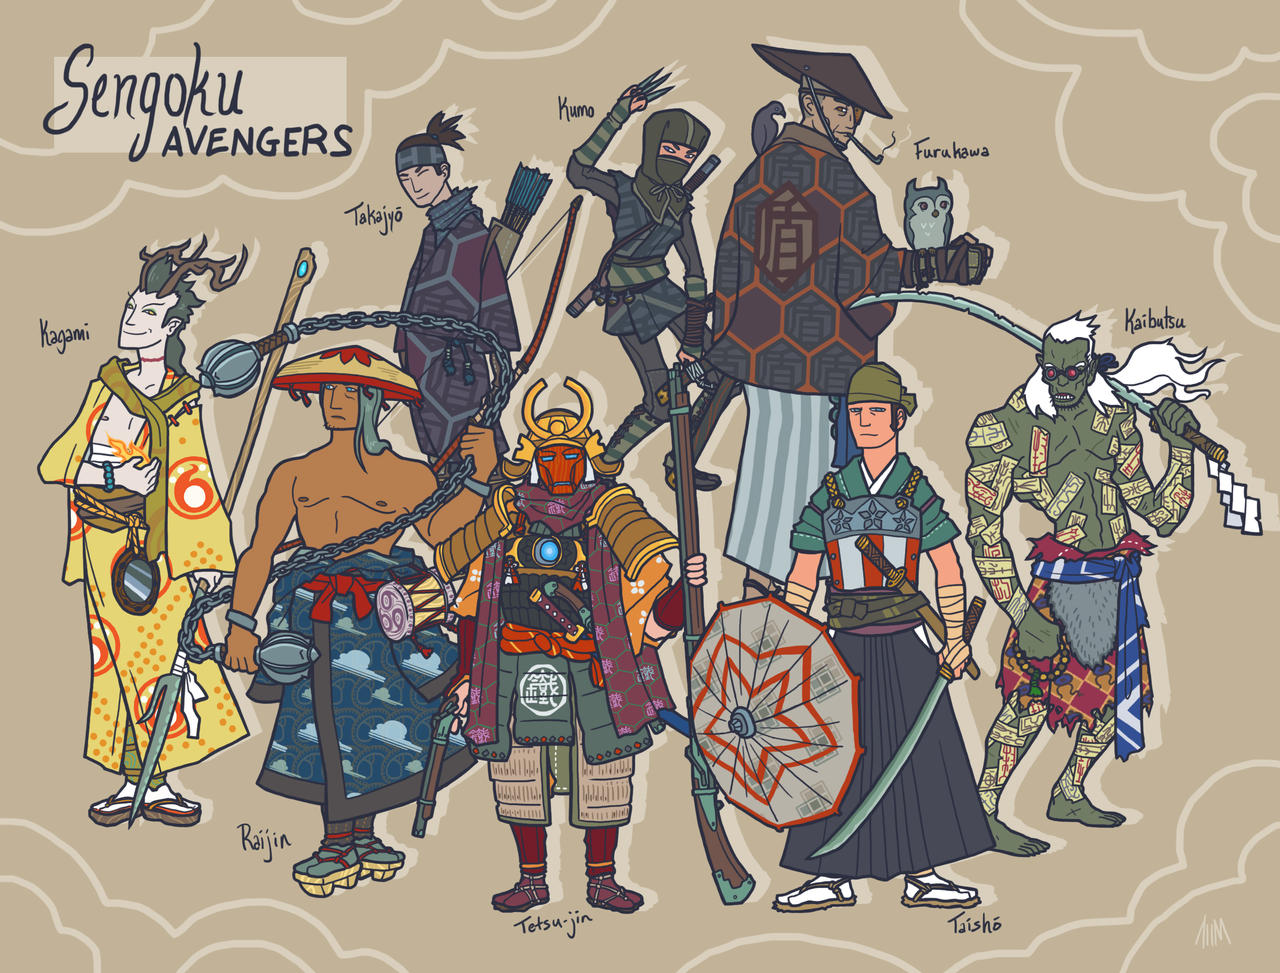 Sengoku Avengers: Full Roster